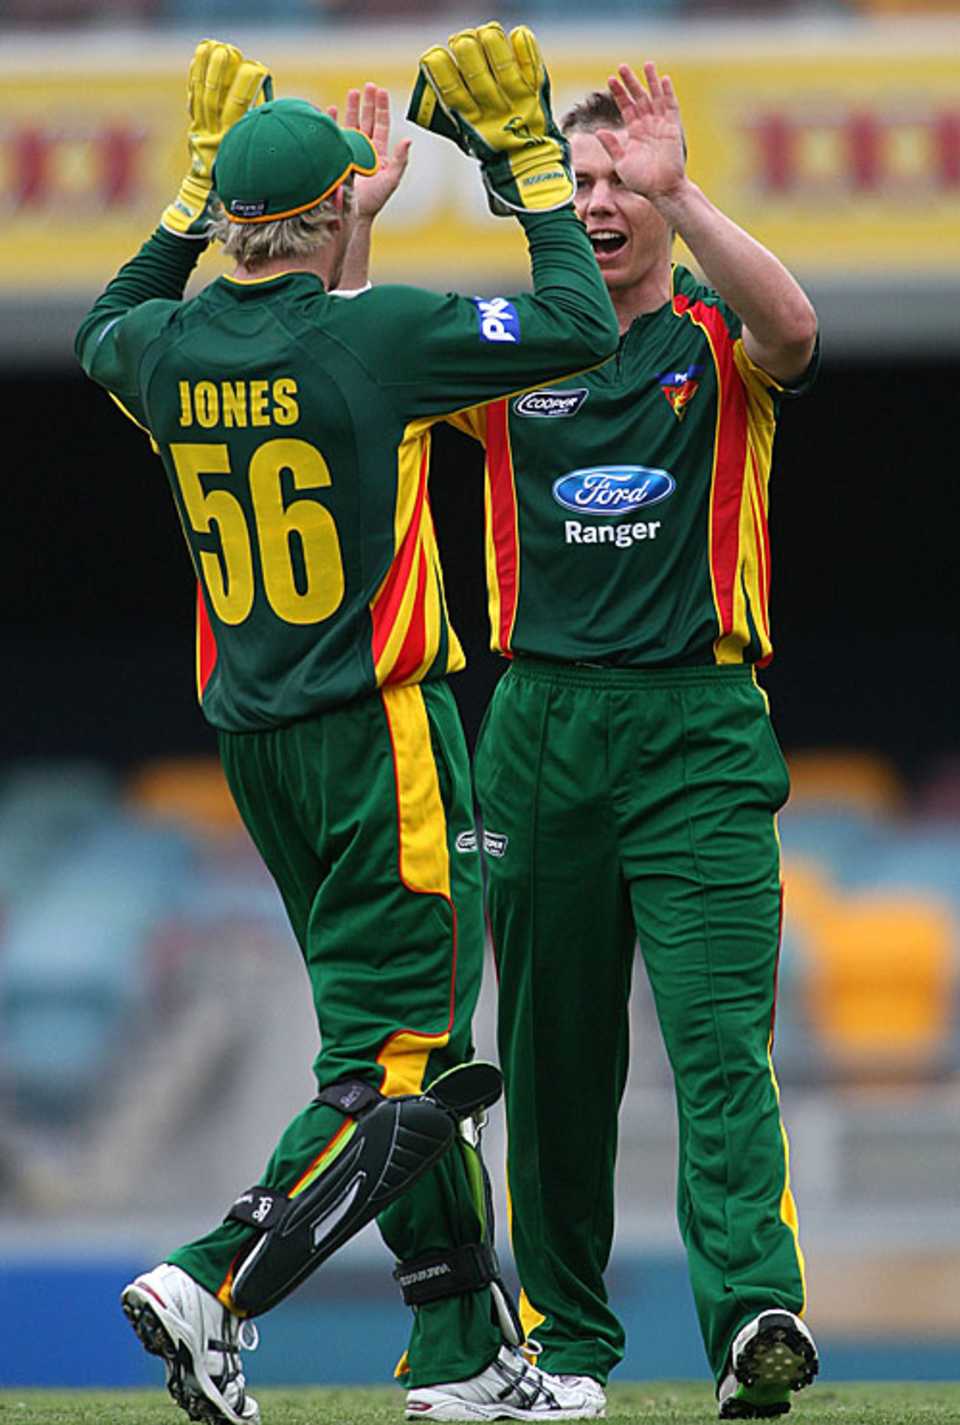 Brady Jones and Xavier Doherty celebrate a wicket